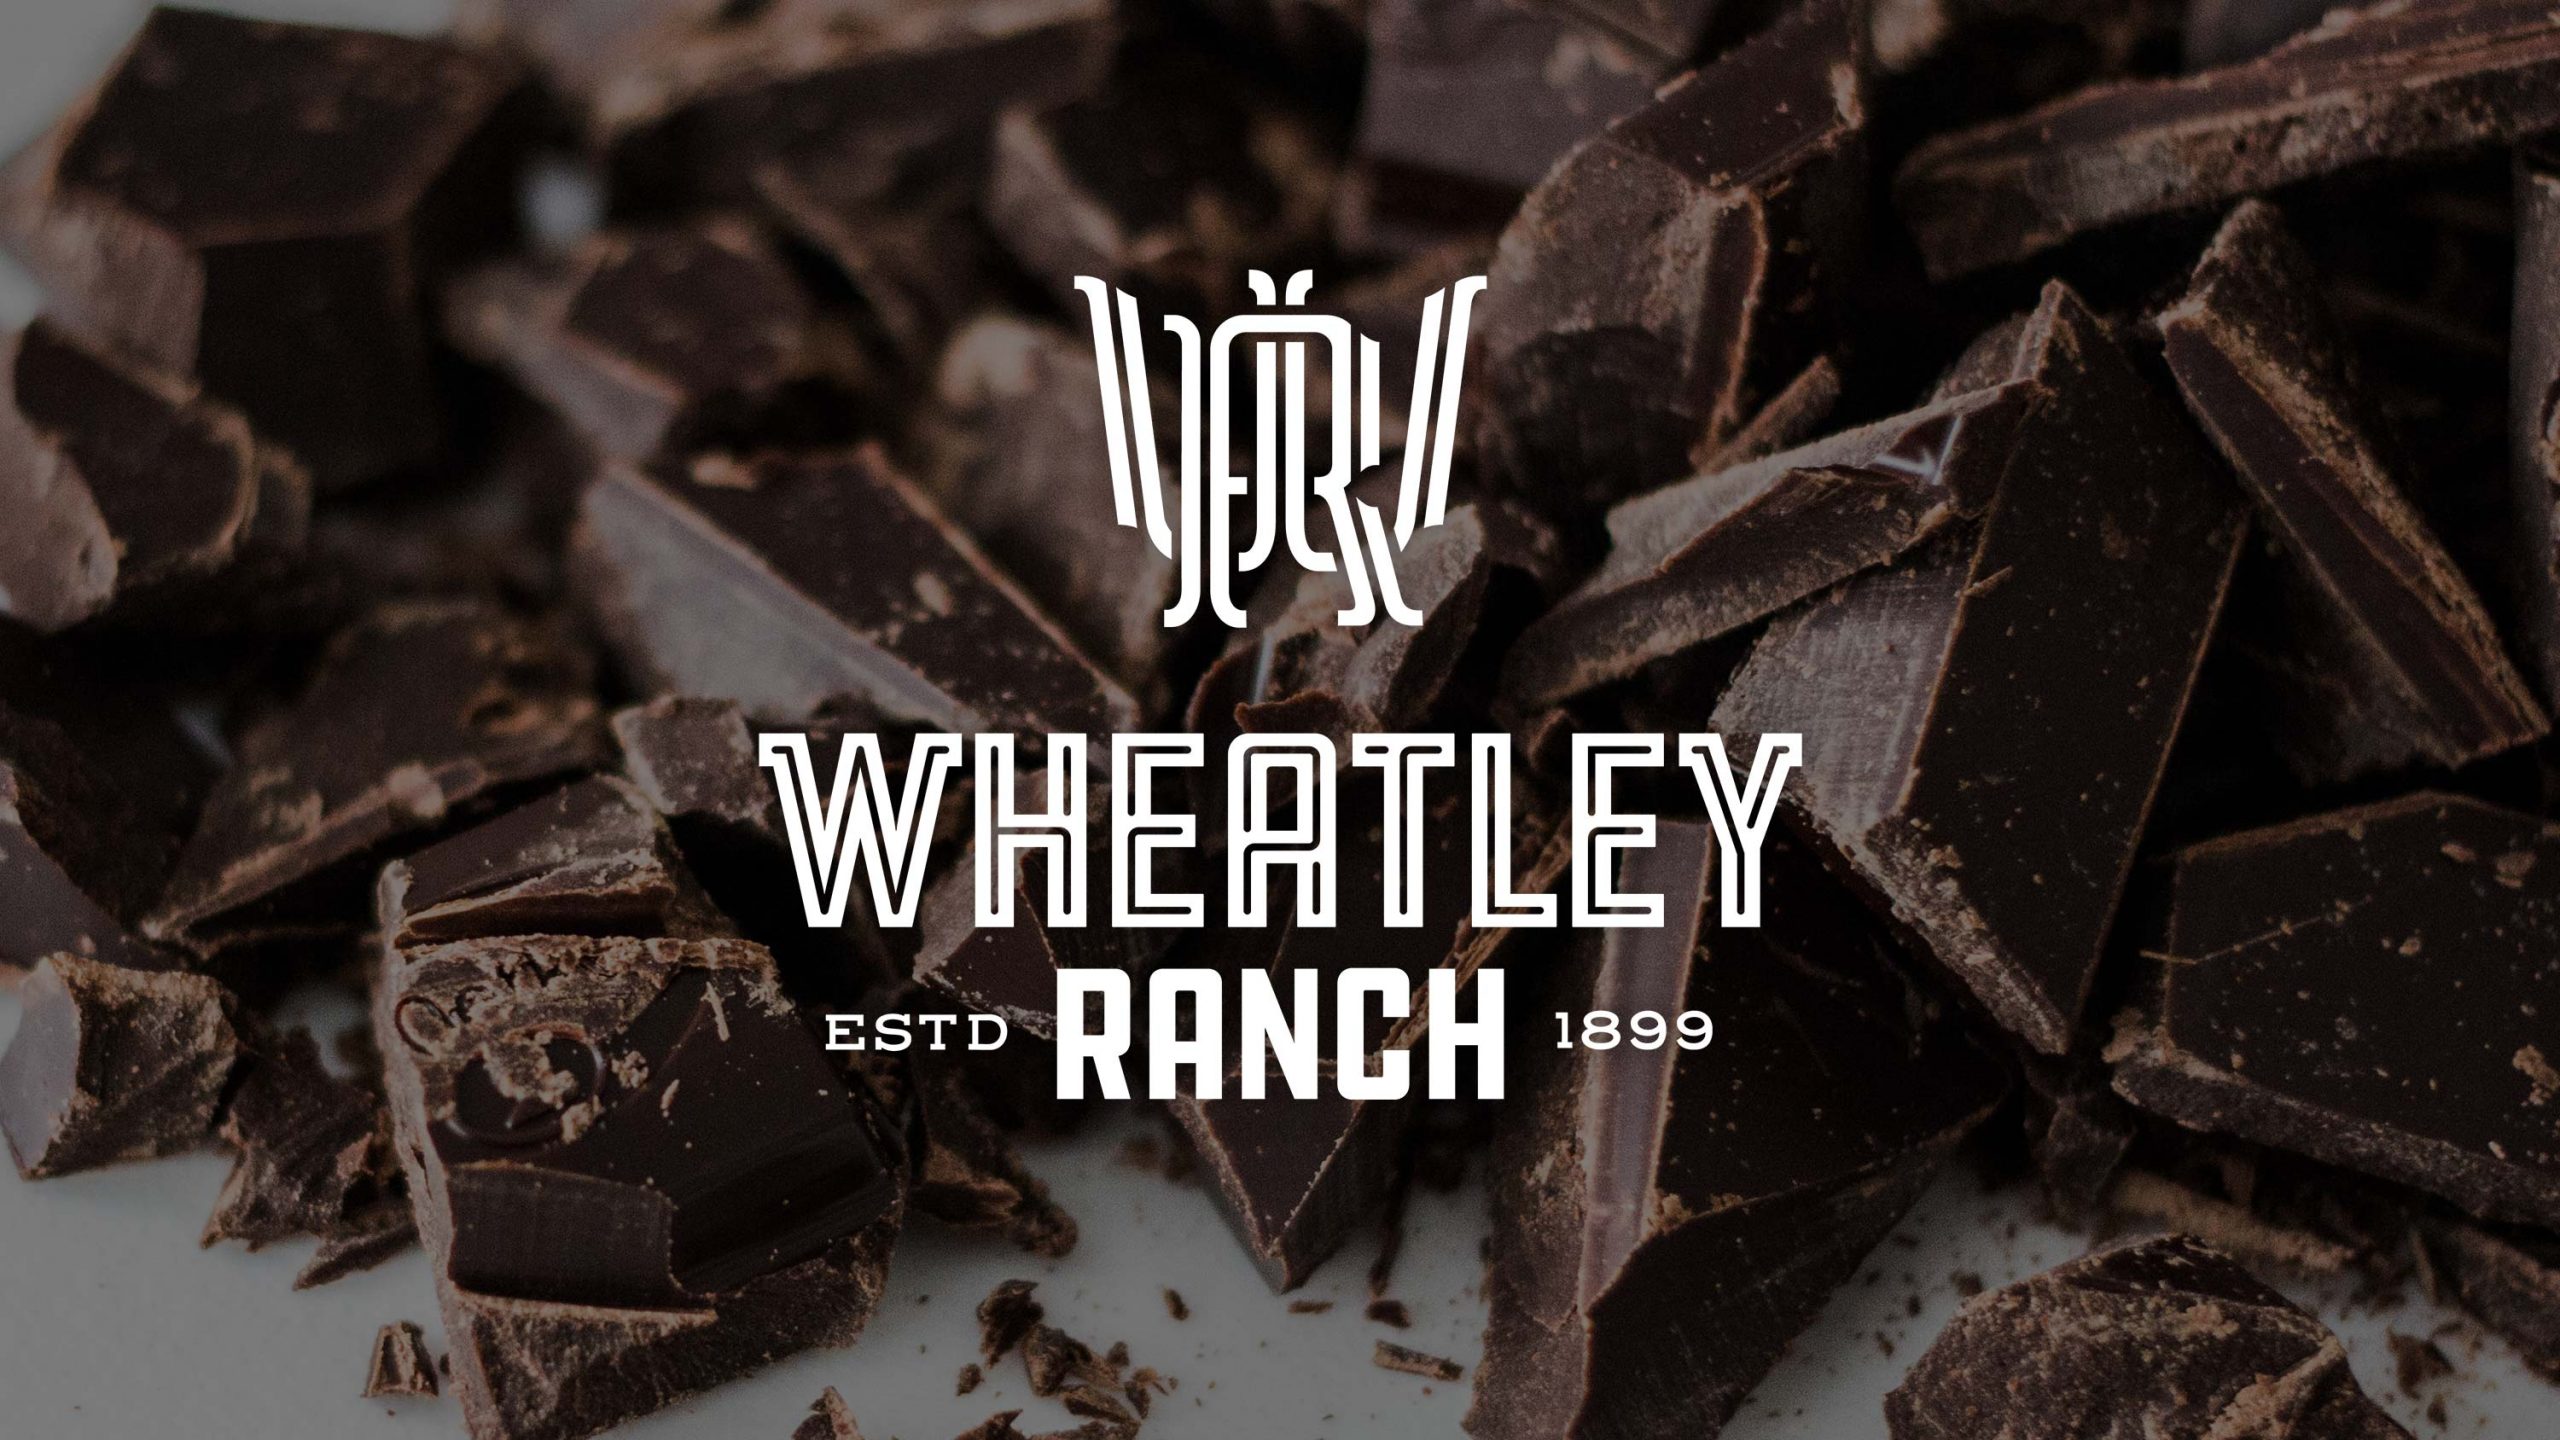 wheatley-wheatley-logo-over-heap-of-chocolate-pieces-designhouse